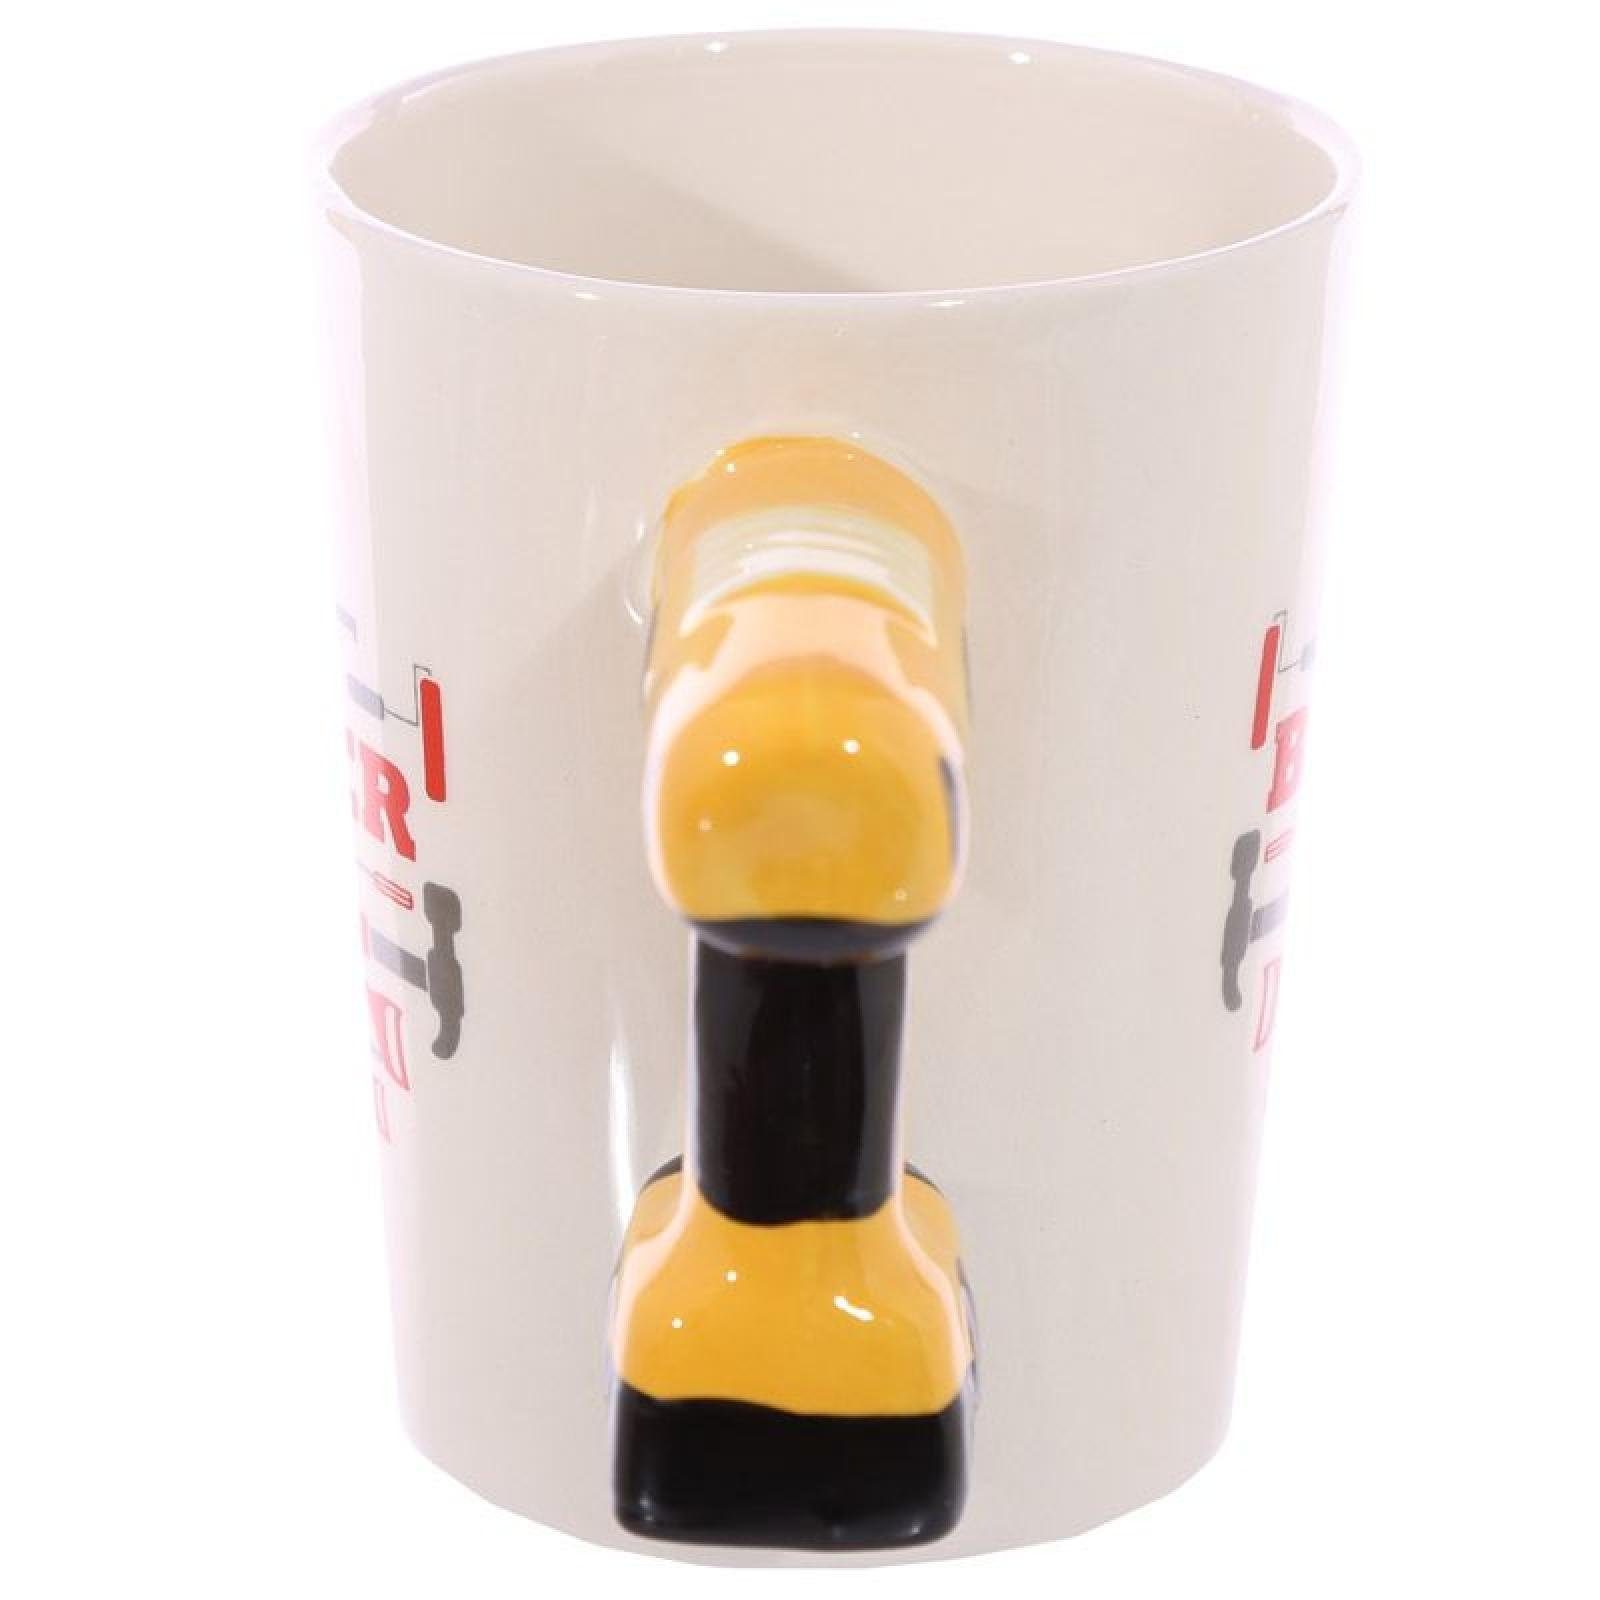 Puckator Tasse geformter Bohrmaschine und Dolomit-Ke Henkel Tasse Bild aus Handwerker